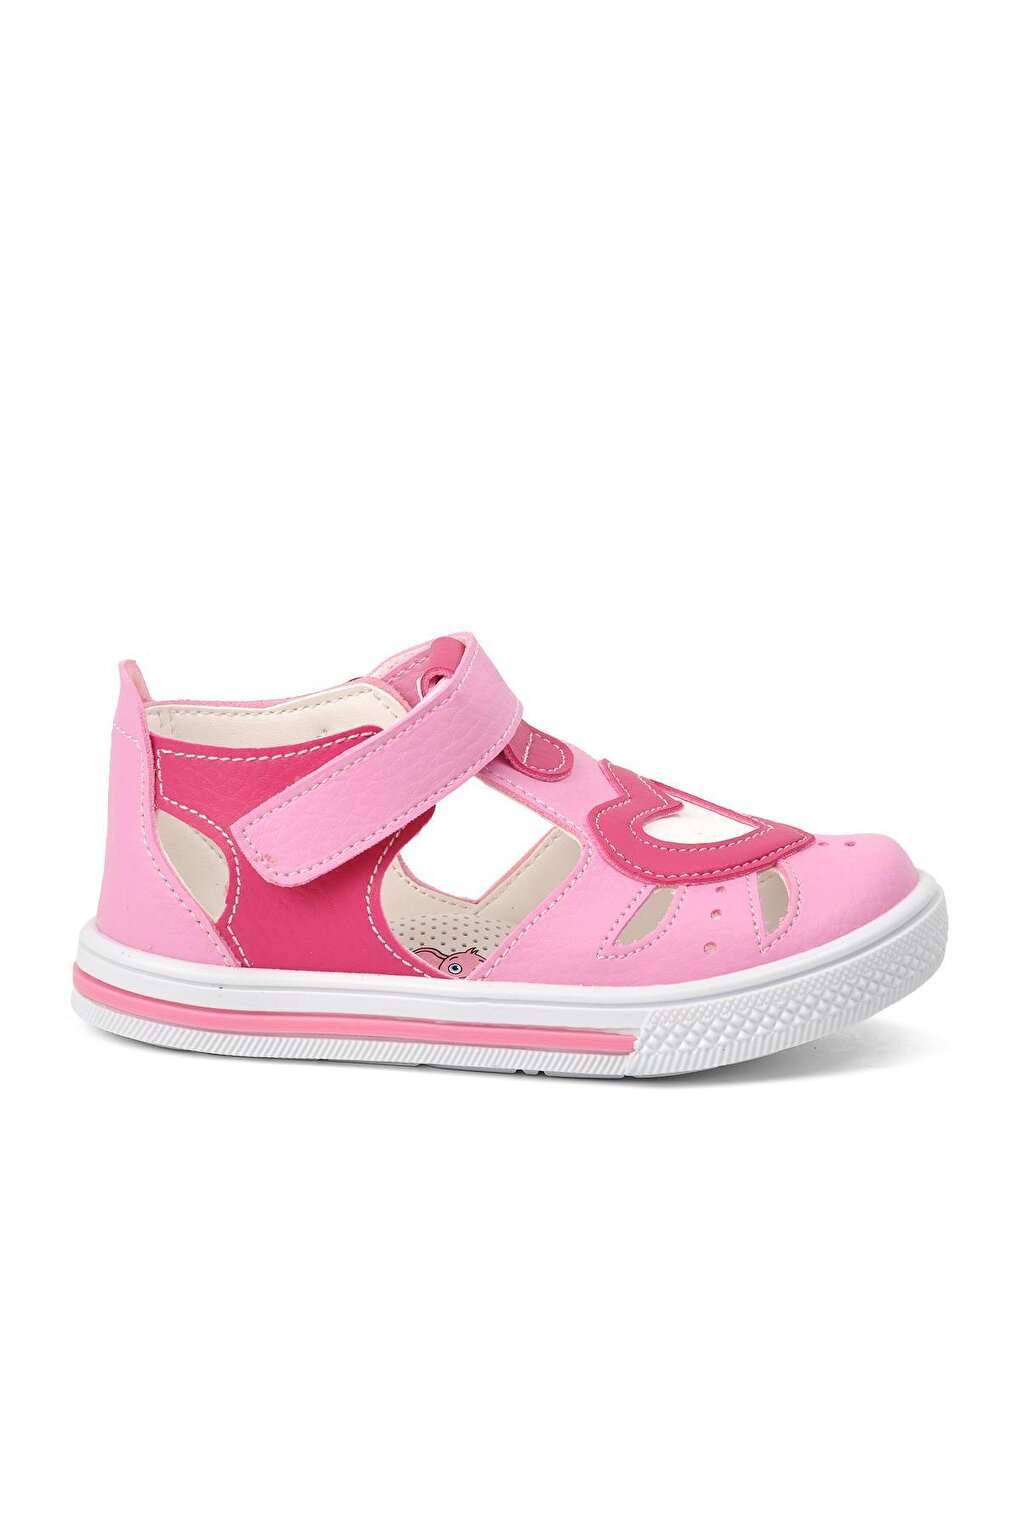 сандалии для девочек с закрытым носком летняя обувь для маленьких принцесс ходунки для маленьких девочек 210103 Летняя обувь для маленьких девочек розово-фуксия Ayakmod